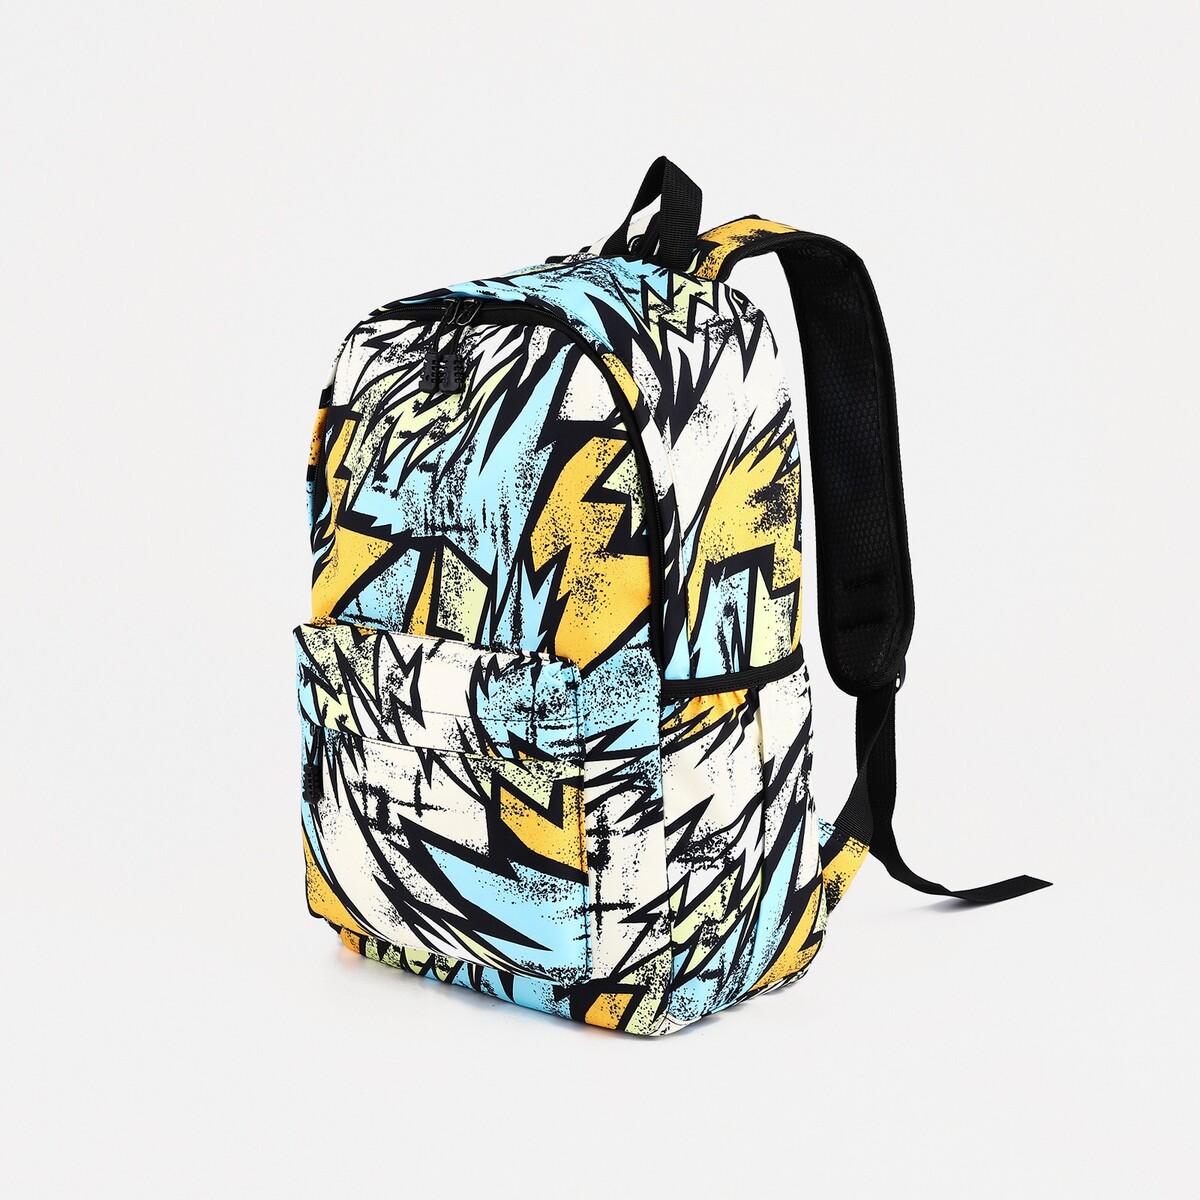 Рюкзак школьный из текстиля на молнии, 3 кармана, цвет желтый/разноцветный рюкзак текстильный с карманом желтый 22х13х30 см